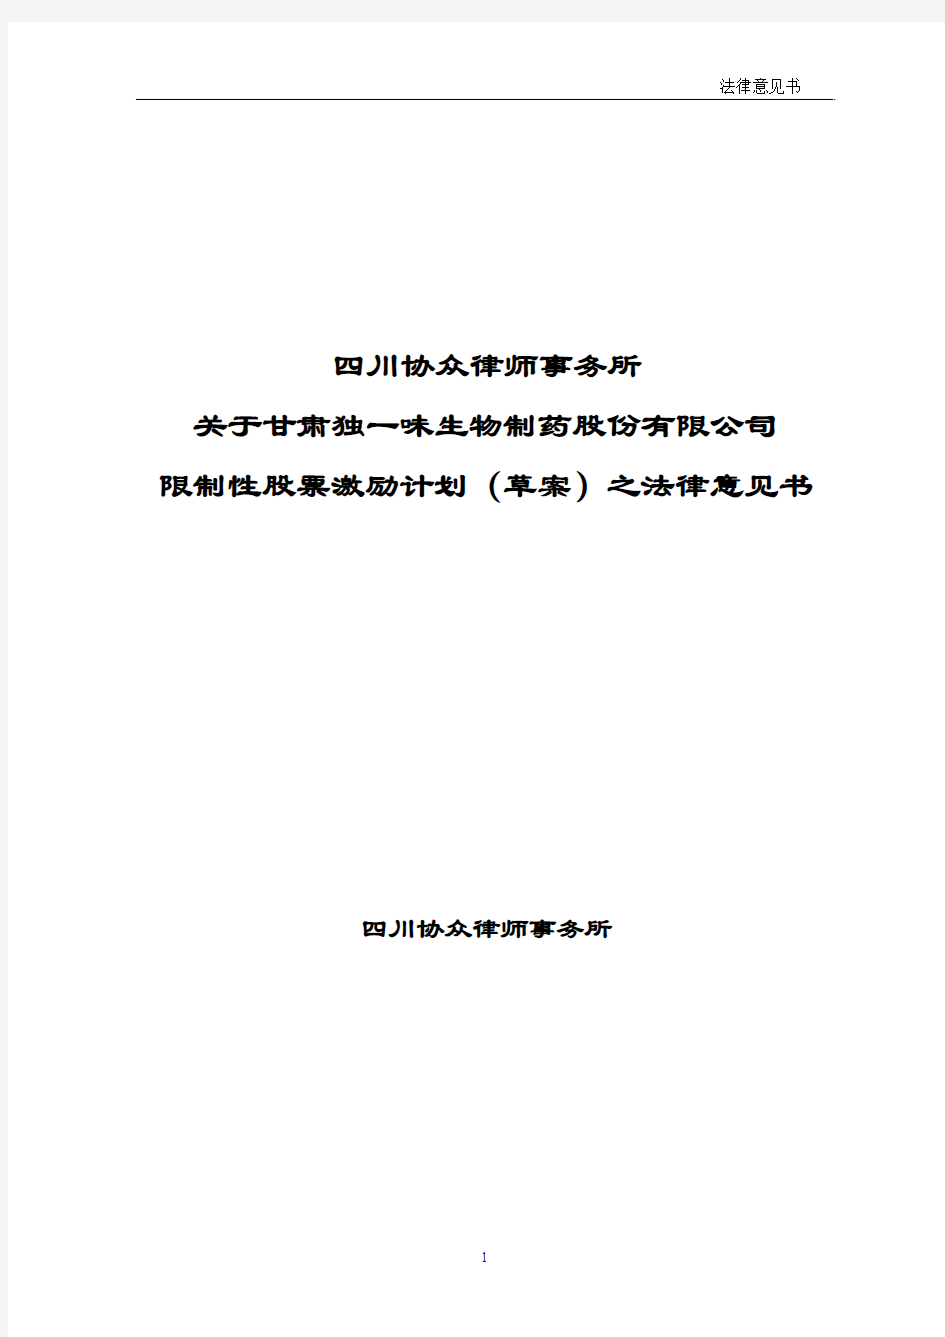 四川协众律师事务所关于公司限制性股票激励计划(草案)之法律意见书